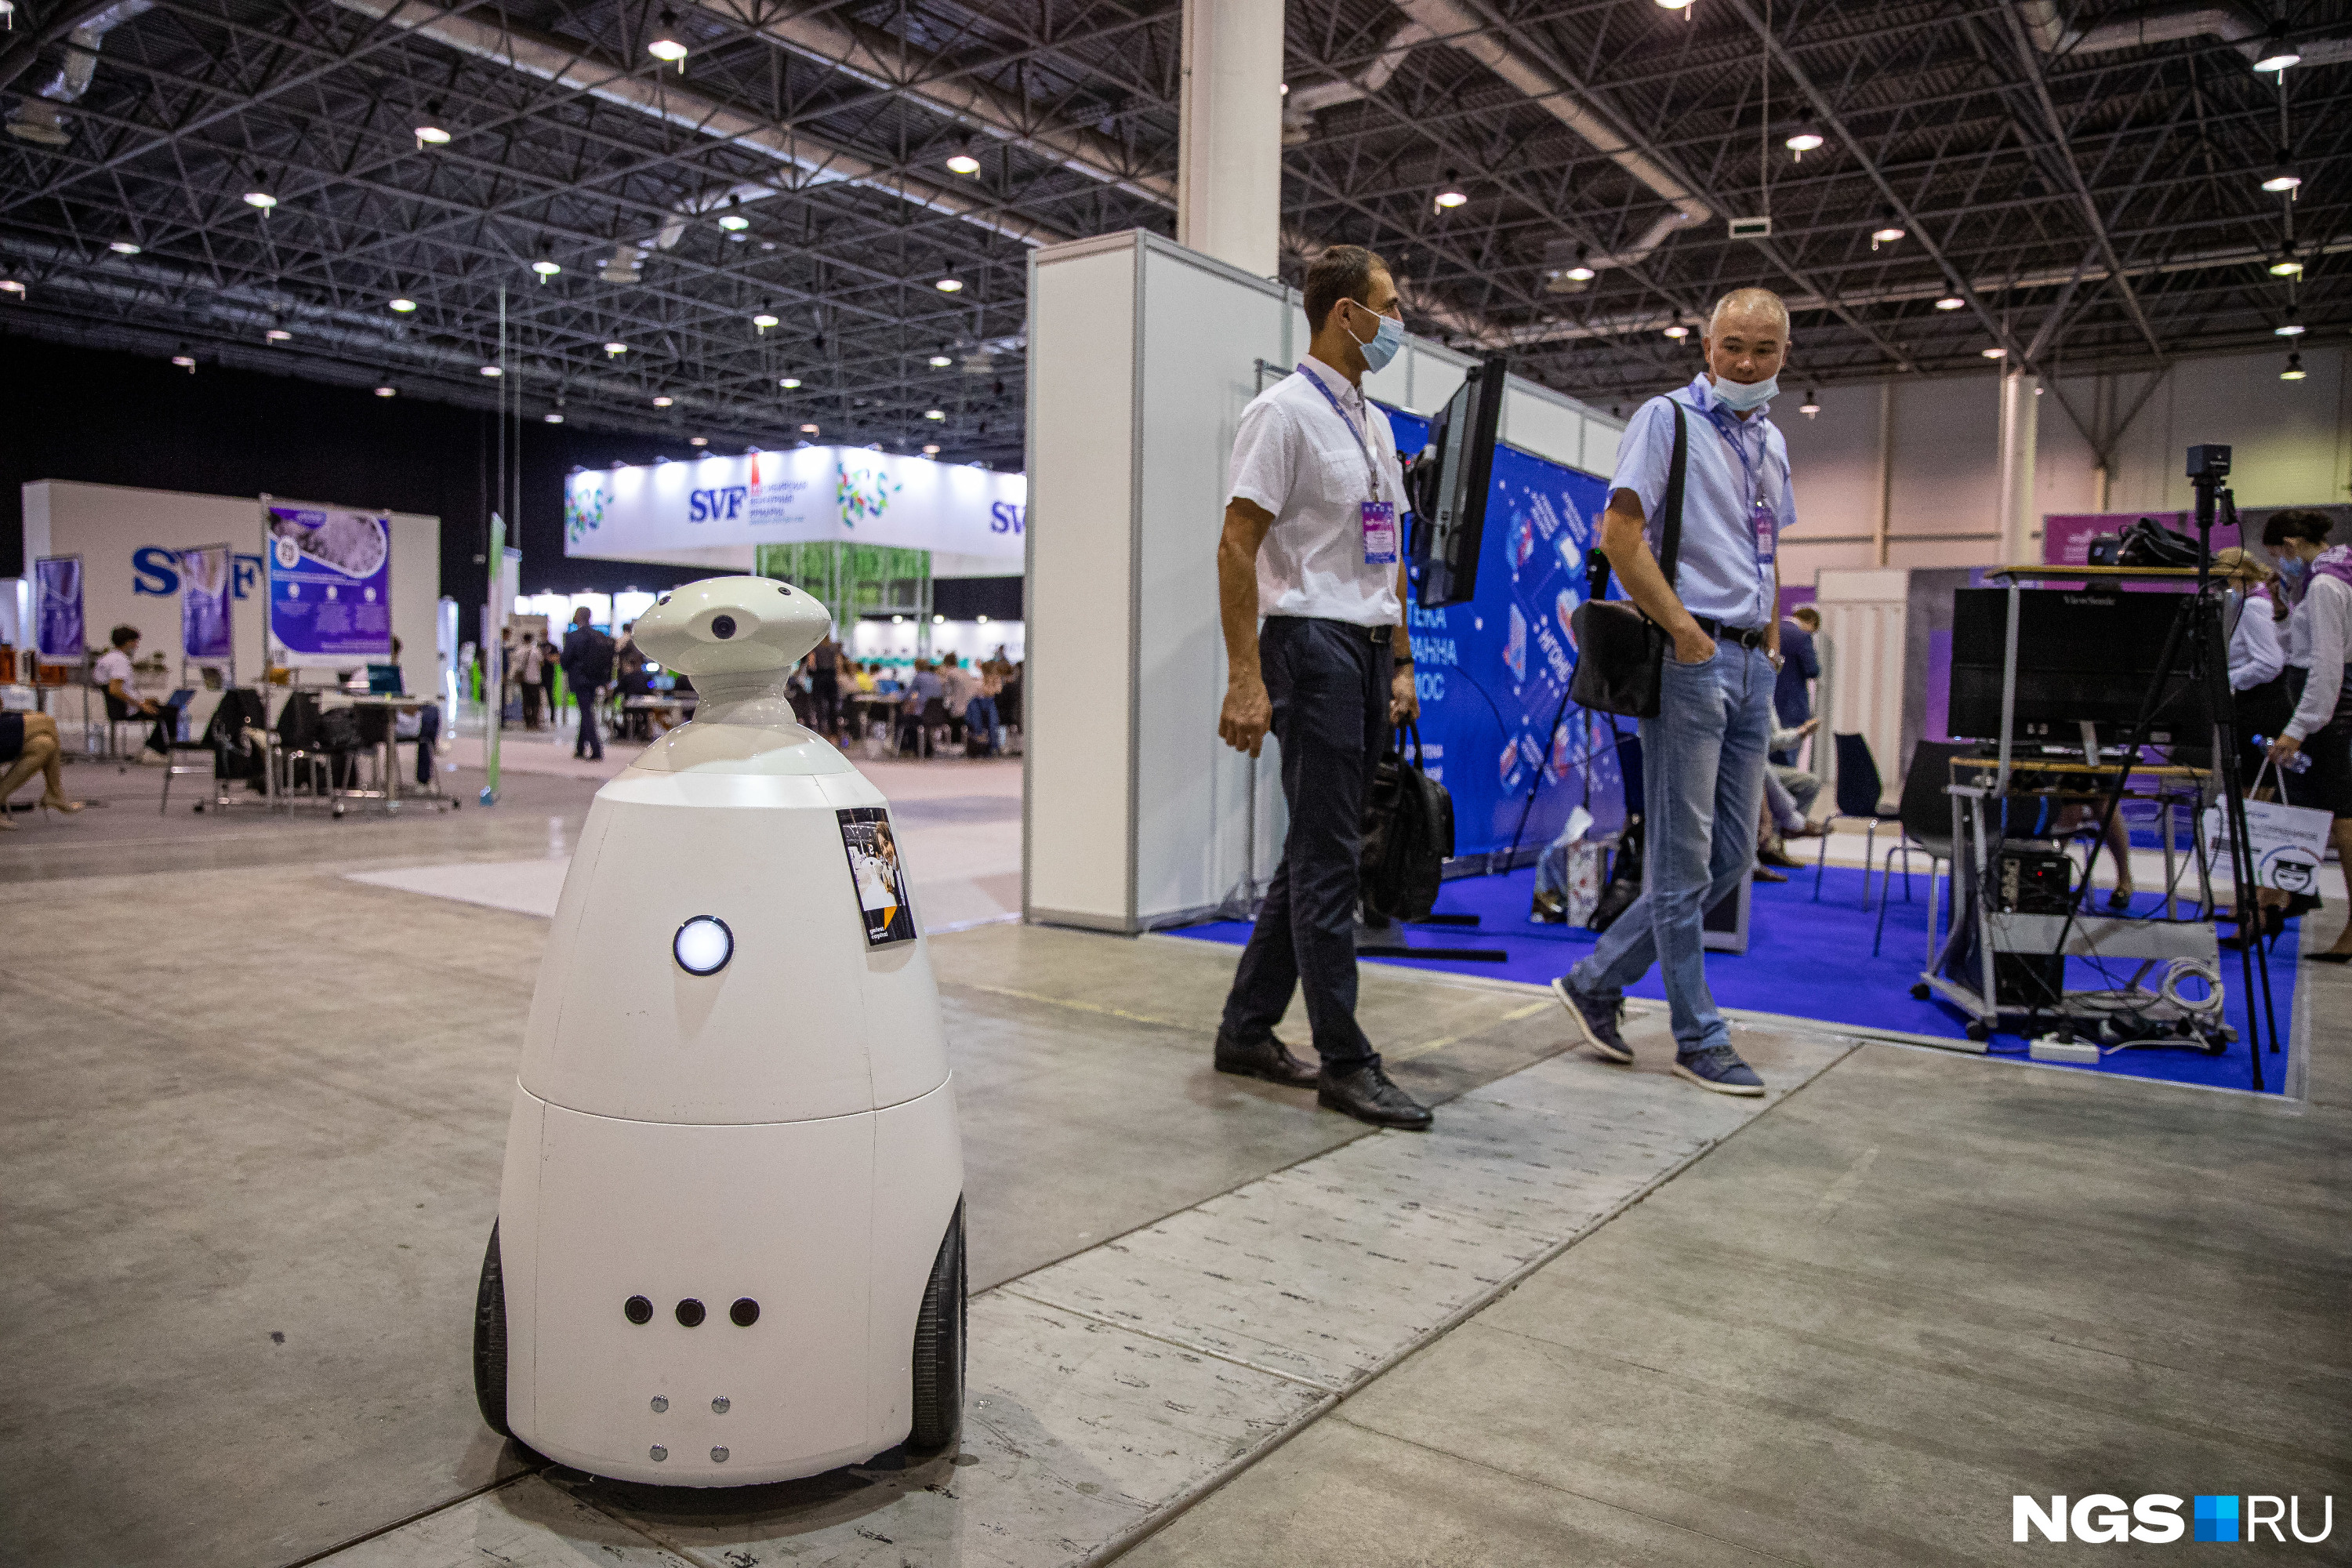 Робот, который в перспективе может встречать посетителей и отвечать на их вопросы